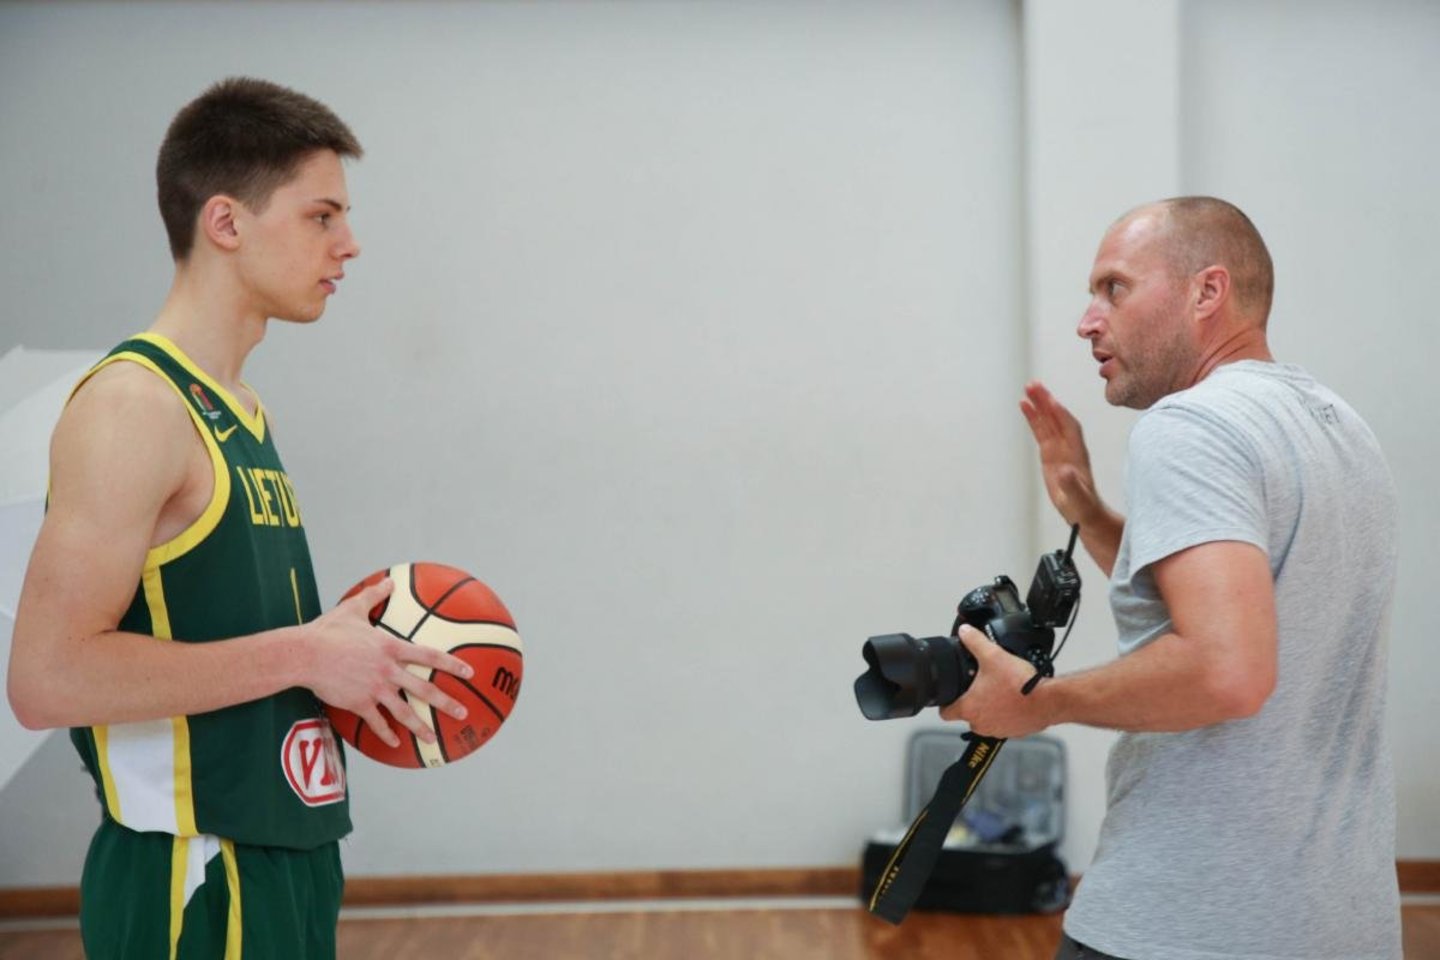 Lietuvos 19-mečių rinktinė nekantrauja pradėti pasaulio čempionatą.